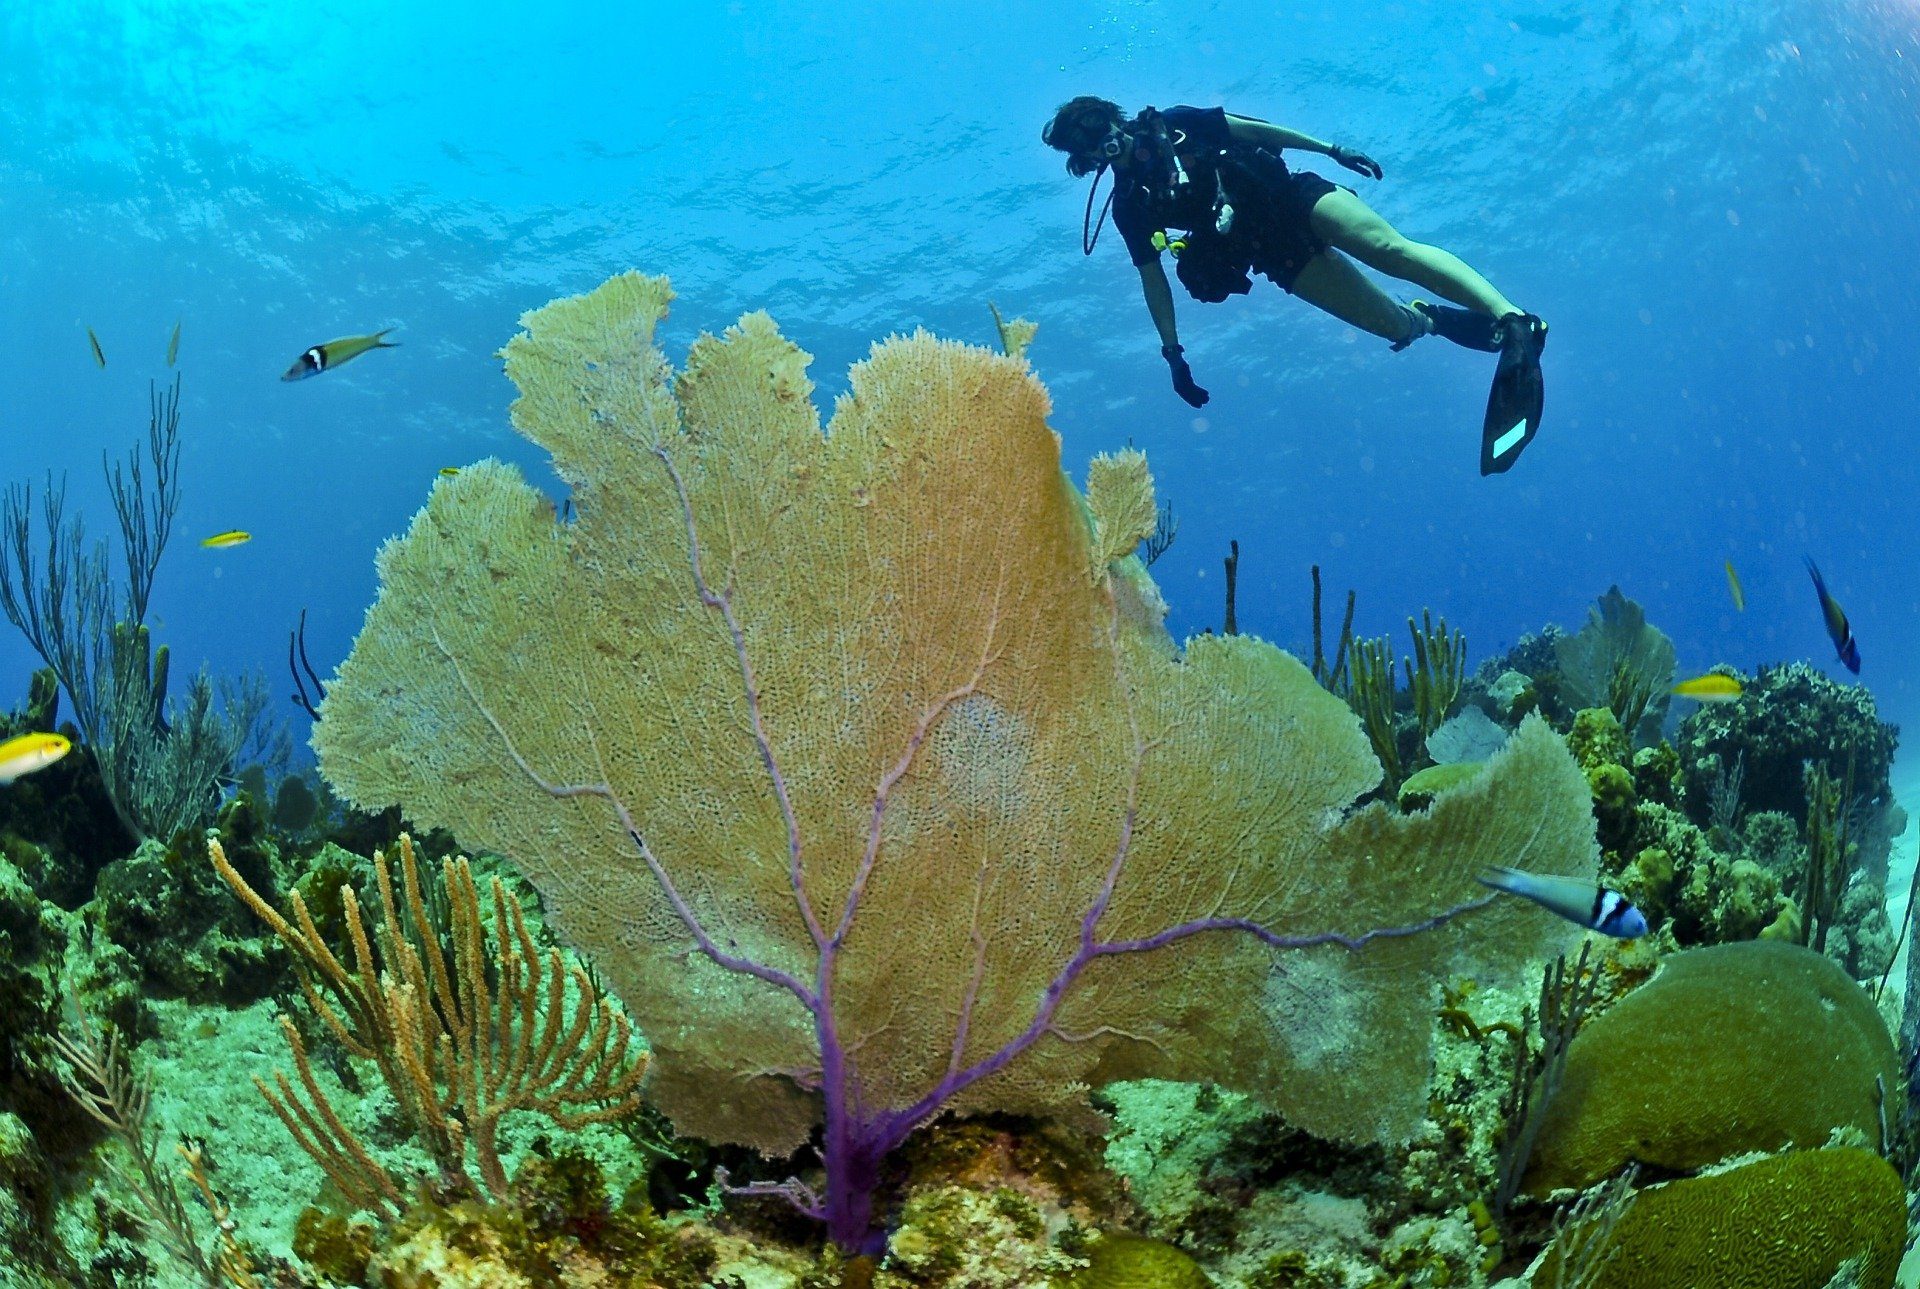 Buzo nadando en el arrecife mientras pasa por encima de un enorme coral amarillo con varios peces nadando al lado